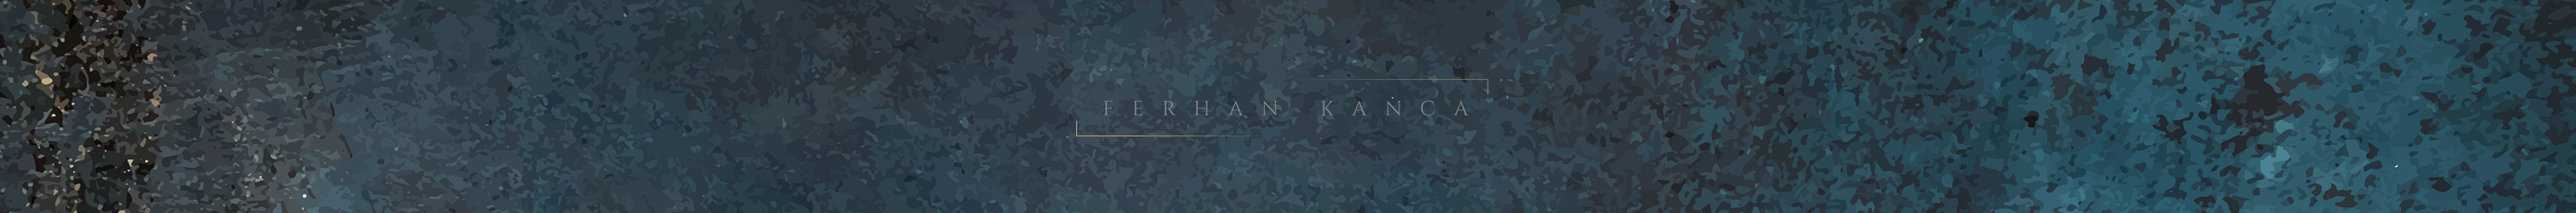 Banner de perfil de Ferhan Kanca